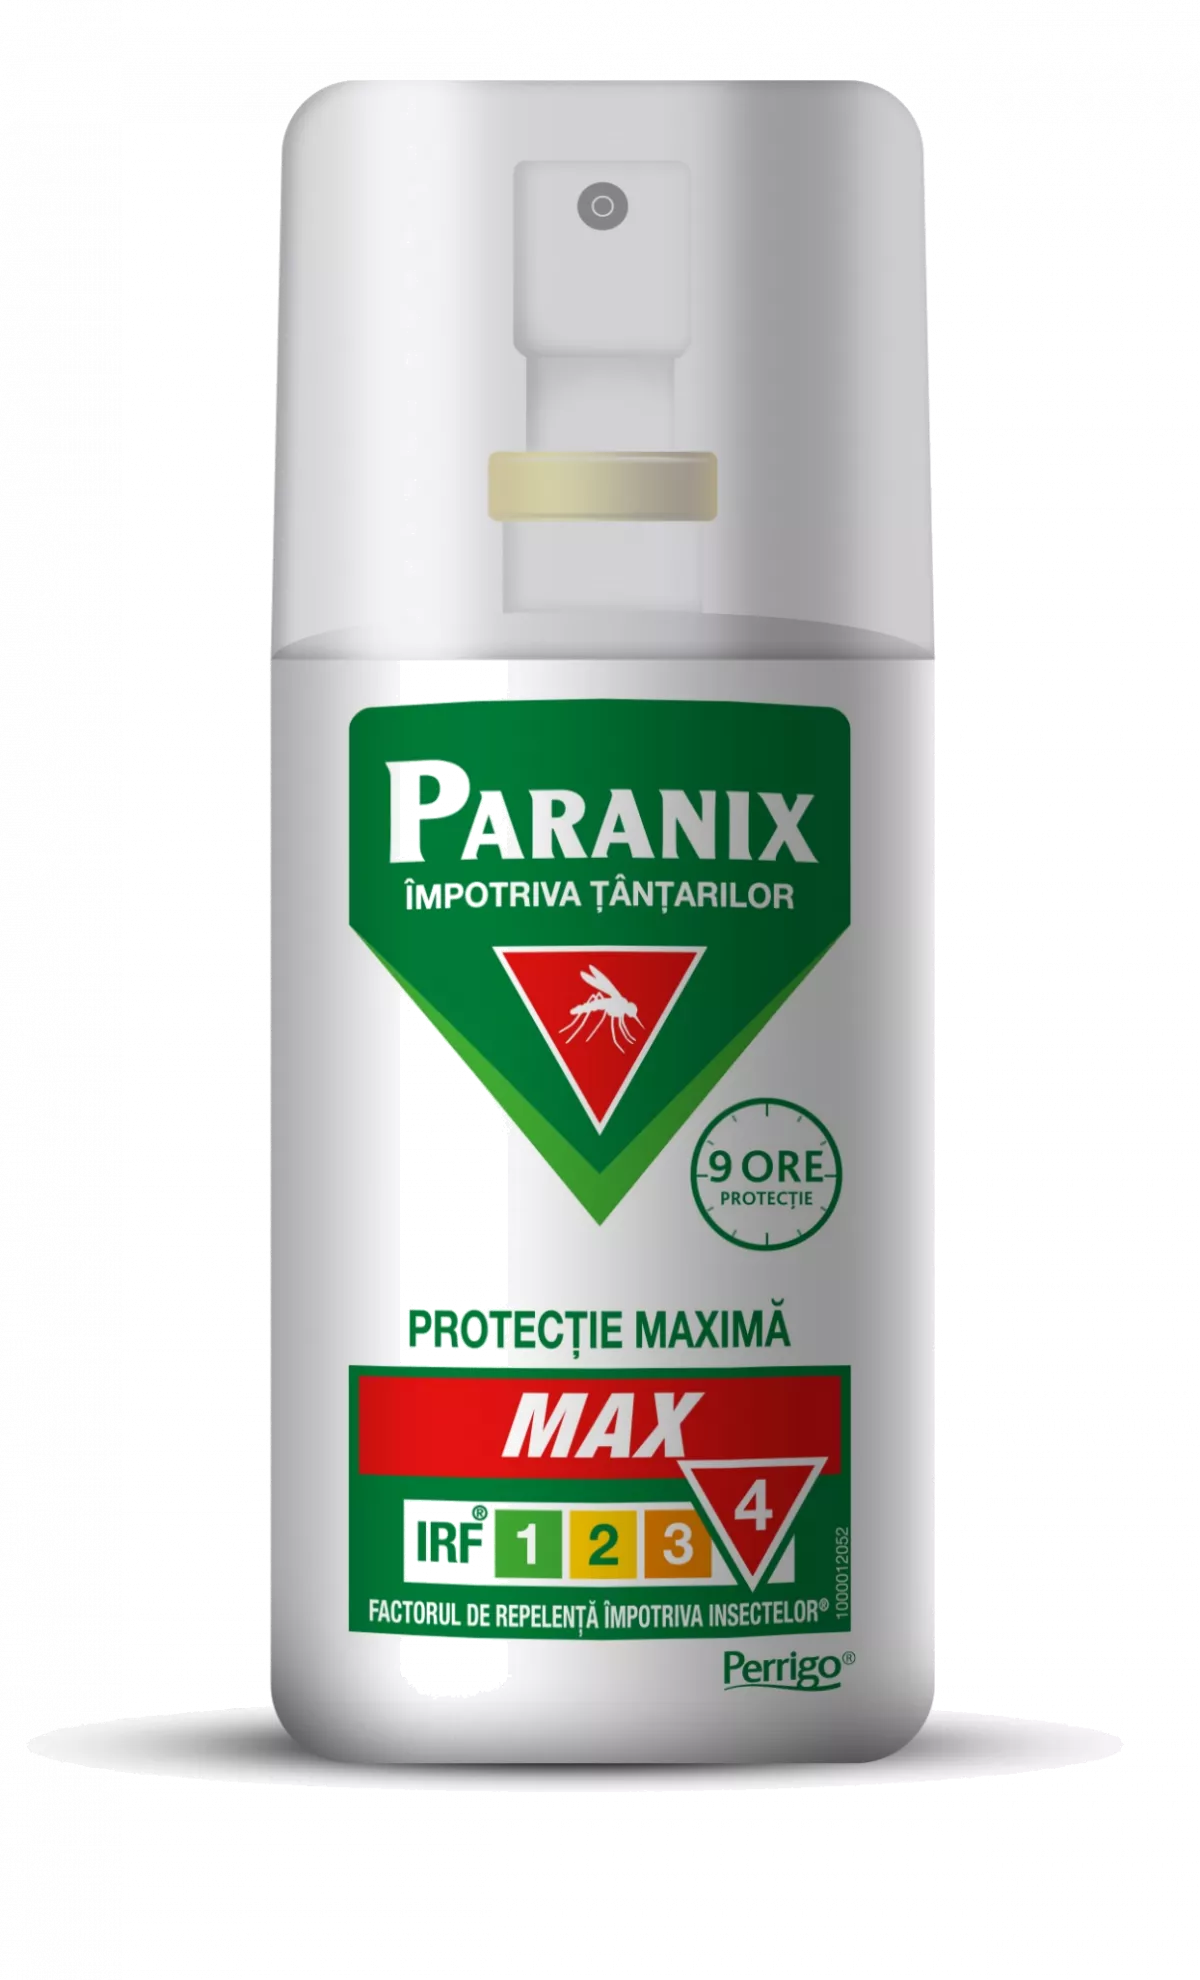 Paranix Max spray impotriva tantarilor x 75ml, [],remediumfarm.ro